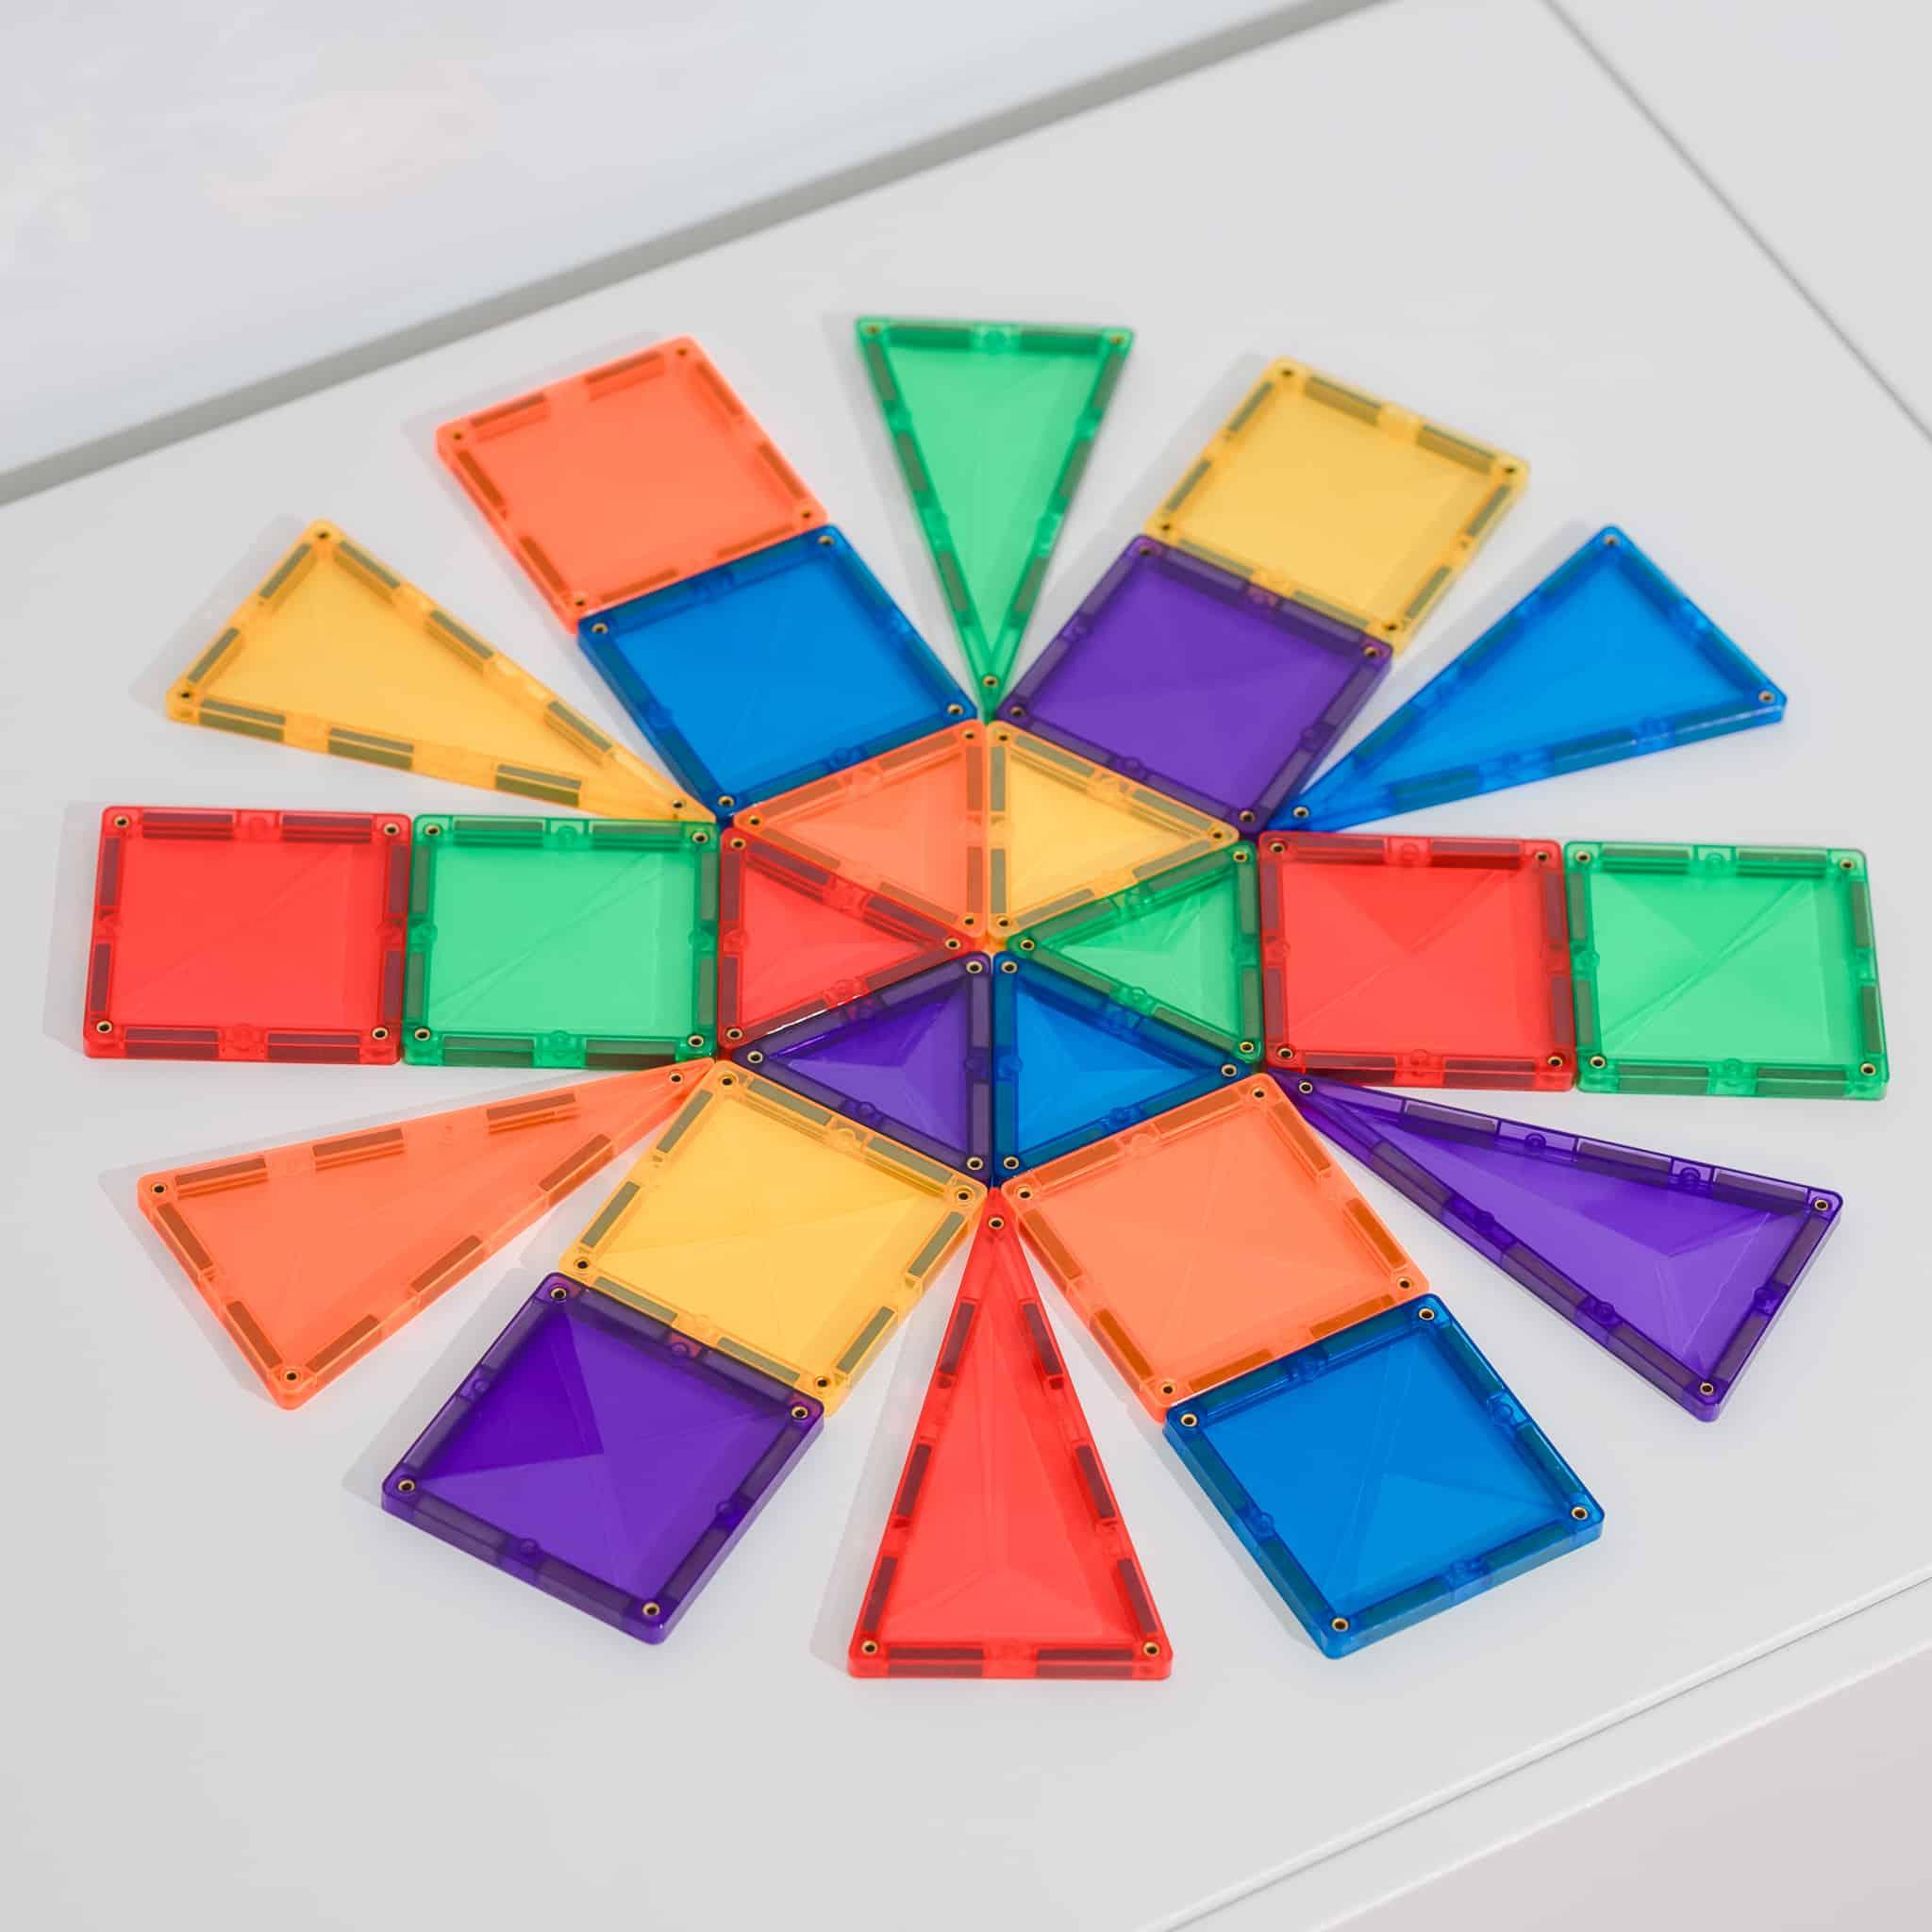 Connetix Tiles Rainbow Mini Pack 24 pc